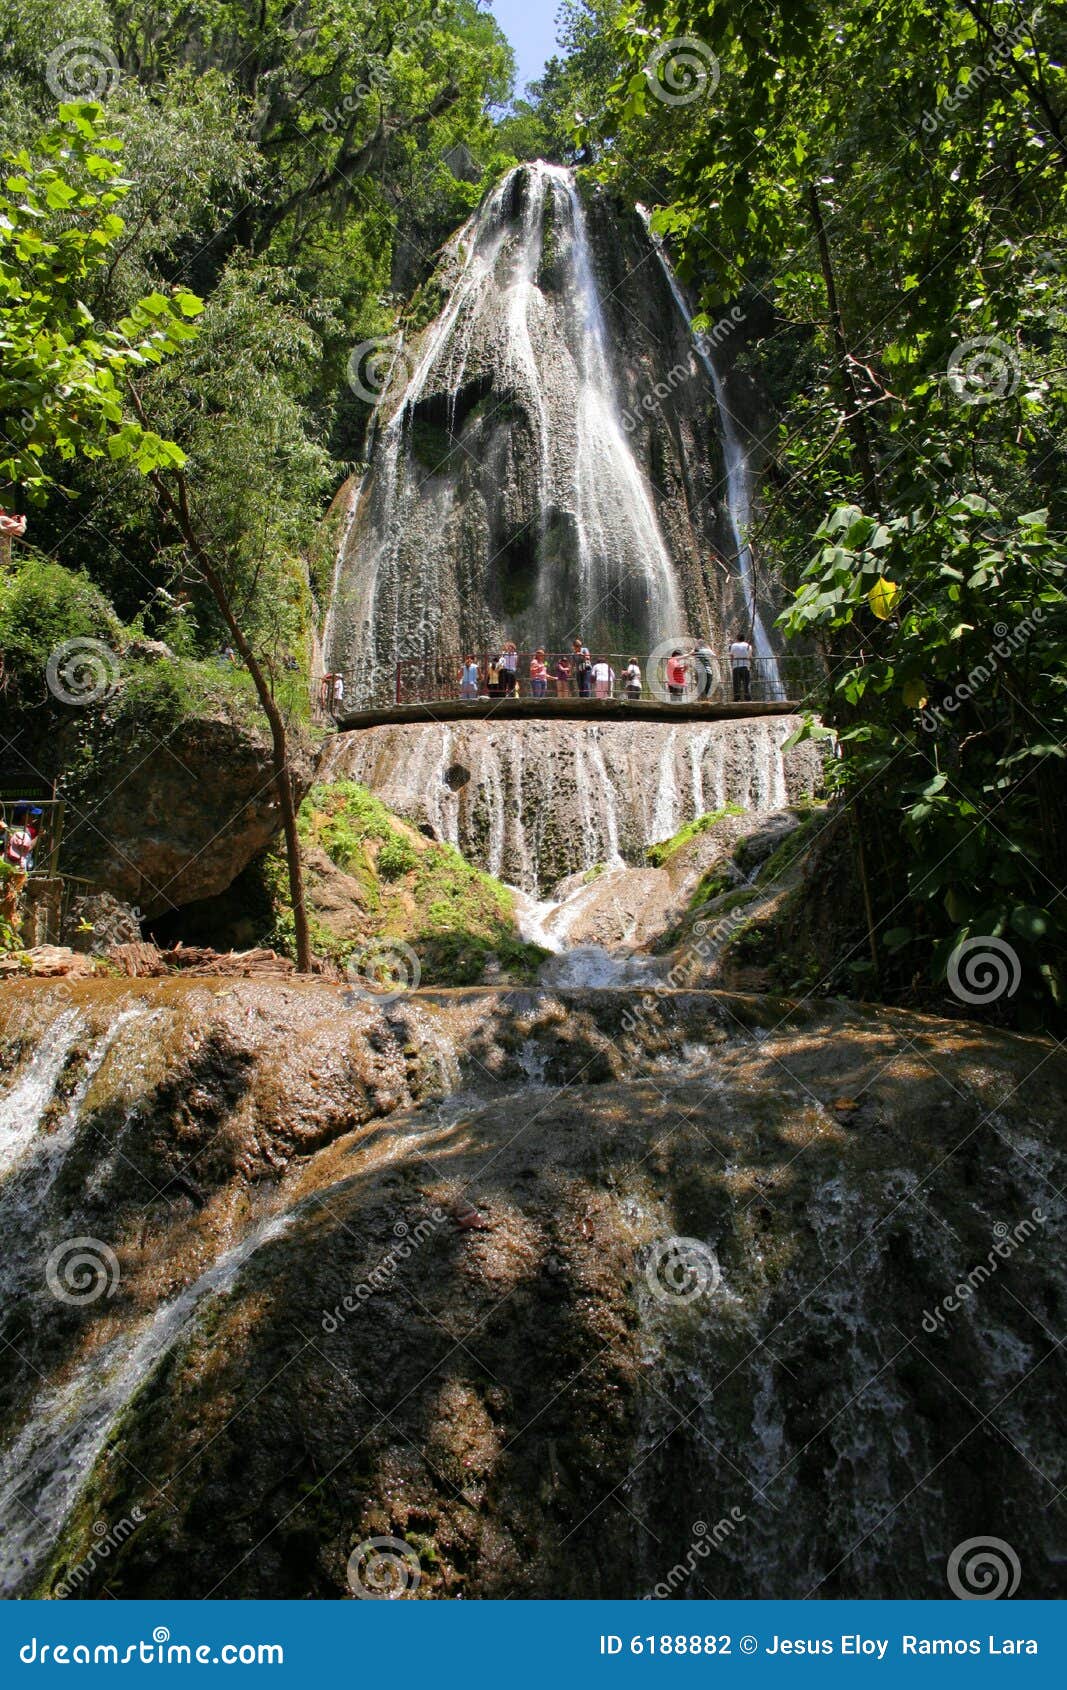 waterfall cola de caballo in monterrey nuevo leon, mexico. i